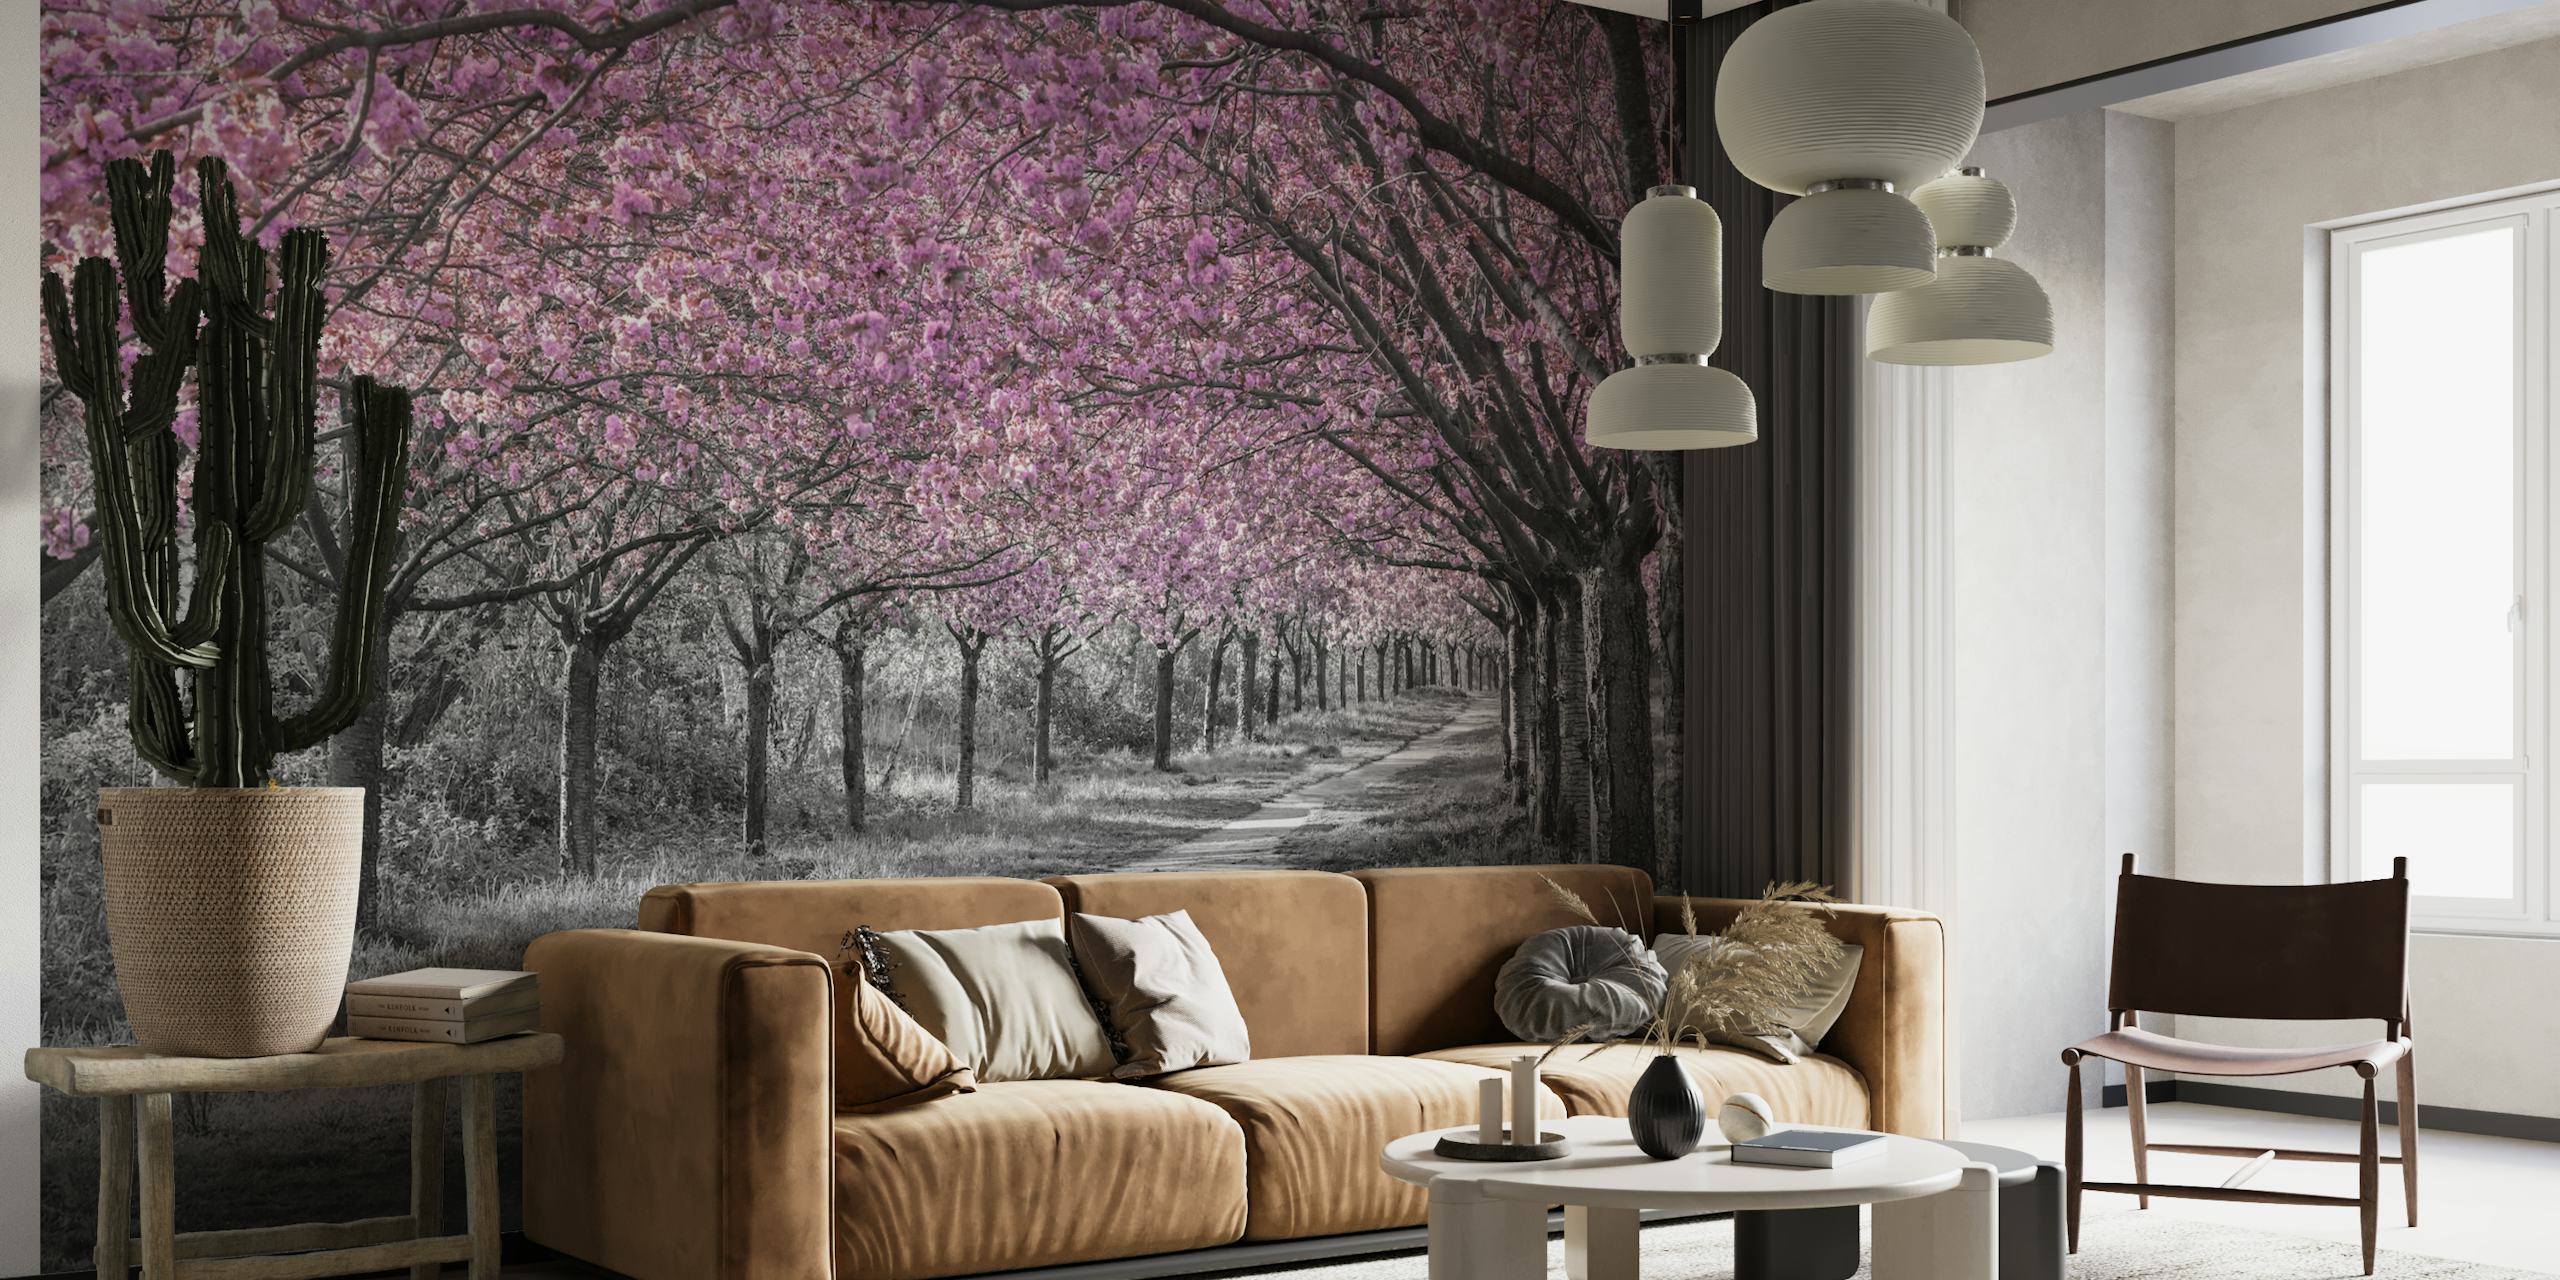 Zidna slika na stazi u obliku trešnjinog cvijeta s ružičastim cvjetovima i pozadinom u sivim tonovima